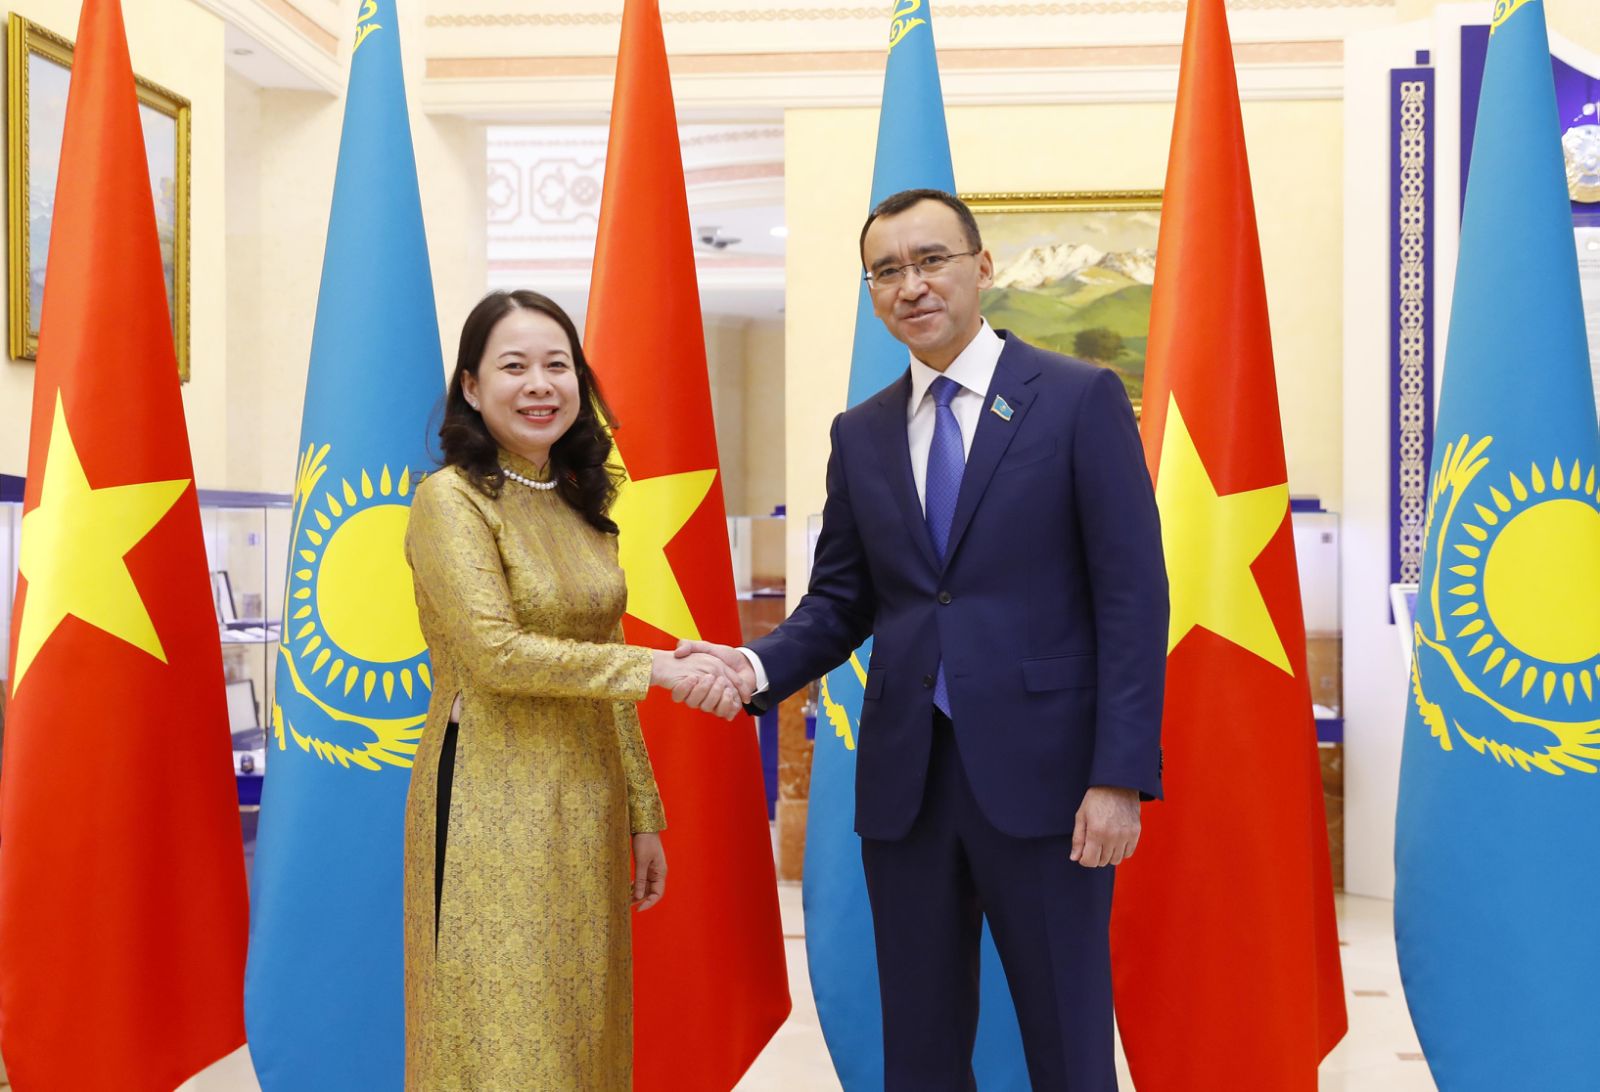 Việt Nam và Kazakhstan đã có mối quan hệ gắn bó mạnh mẽ từ lâu và điều đó được hỗ trợ bởi nhiều đối tác kinh tế và chính trị. Cả hai quốc gia đã tạo ra nhiều cơ hội hợp tác trên nhiều lĩnh vực, từ năng lượng đến du lịch và giáo dục. Hãy cùng xem hình ảnh về quan hệ hữu nghị này để khám phá thêm những cơ hội mới.